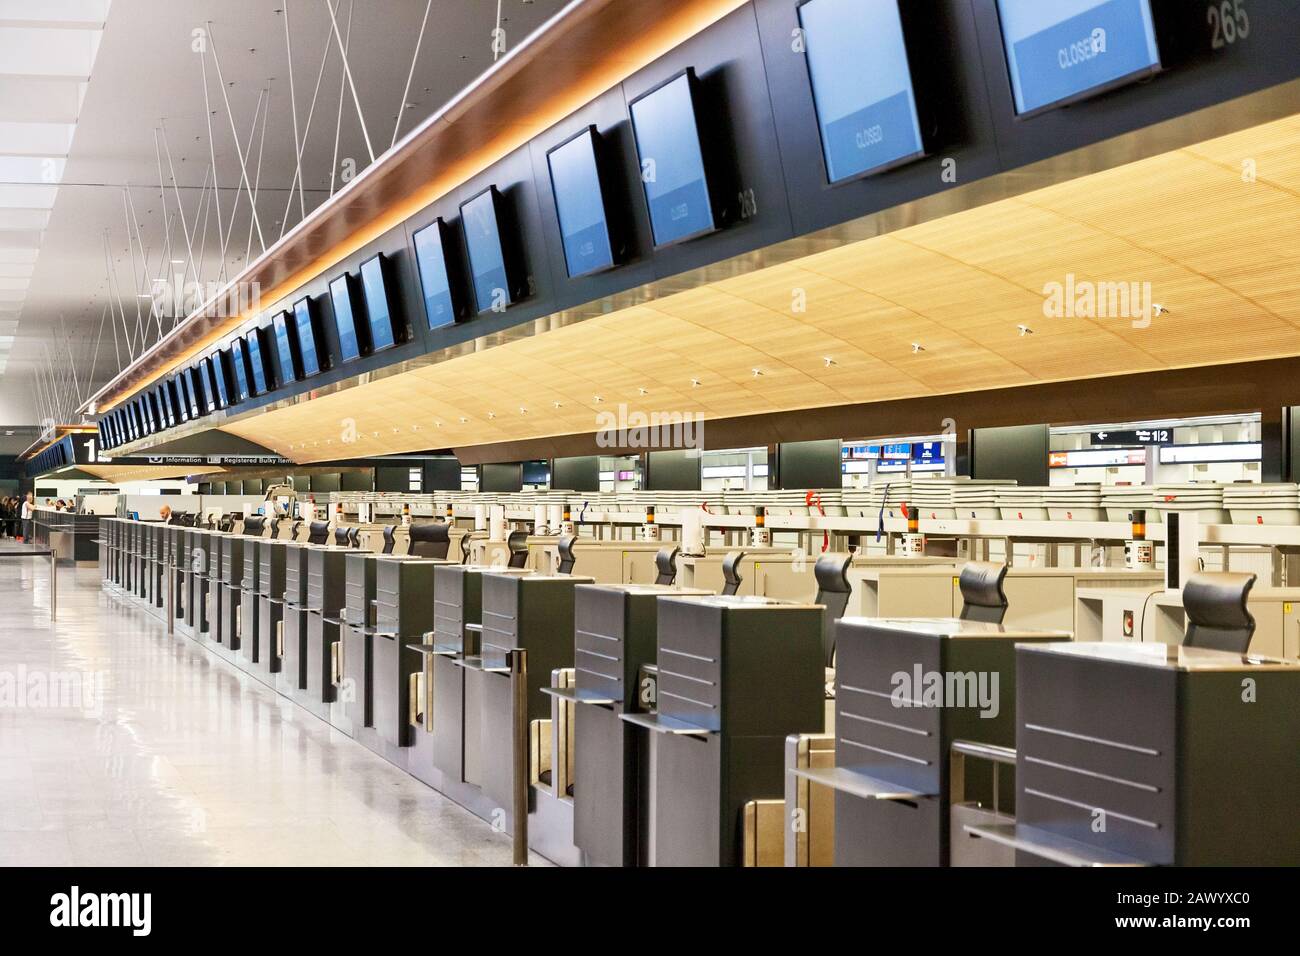 Zurigo, Svizzera - 11 giugno 2017: Banco check-in aeroporto (vuoto), senza persone Foto Stock